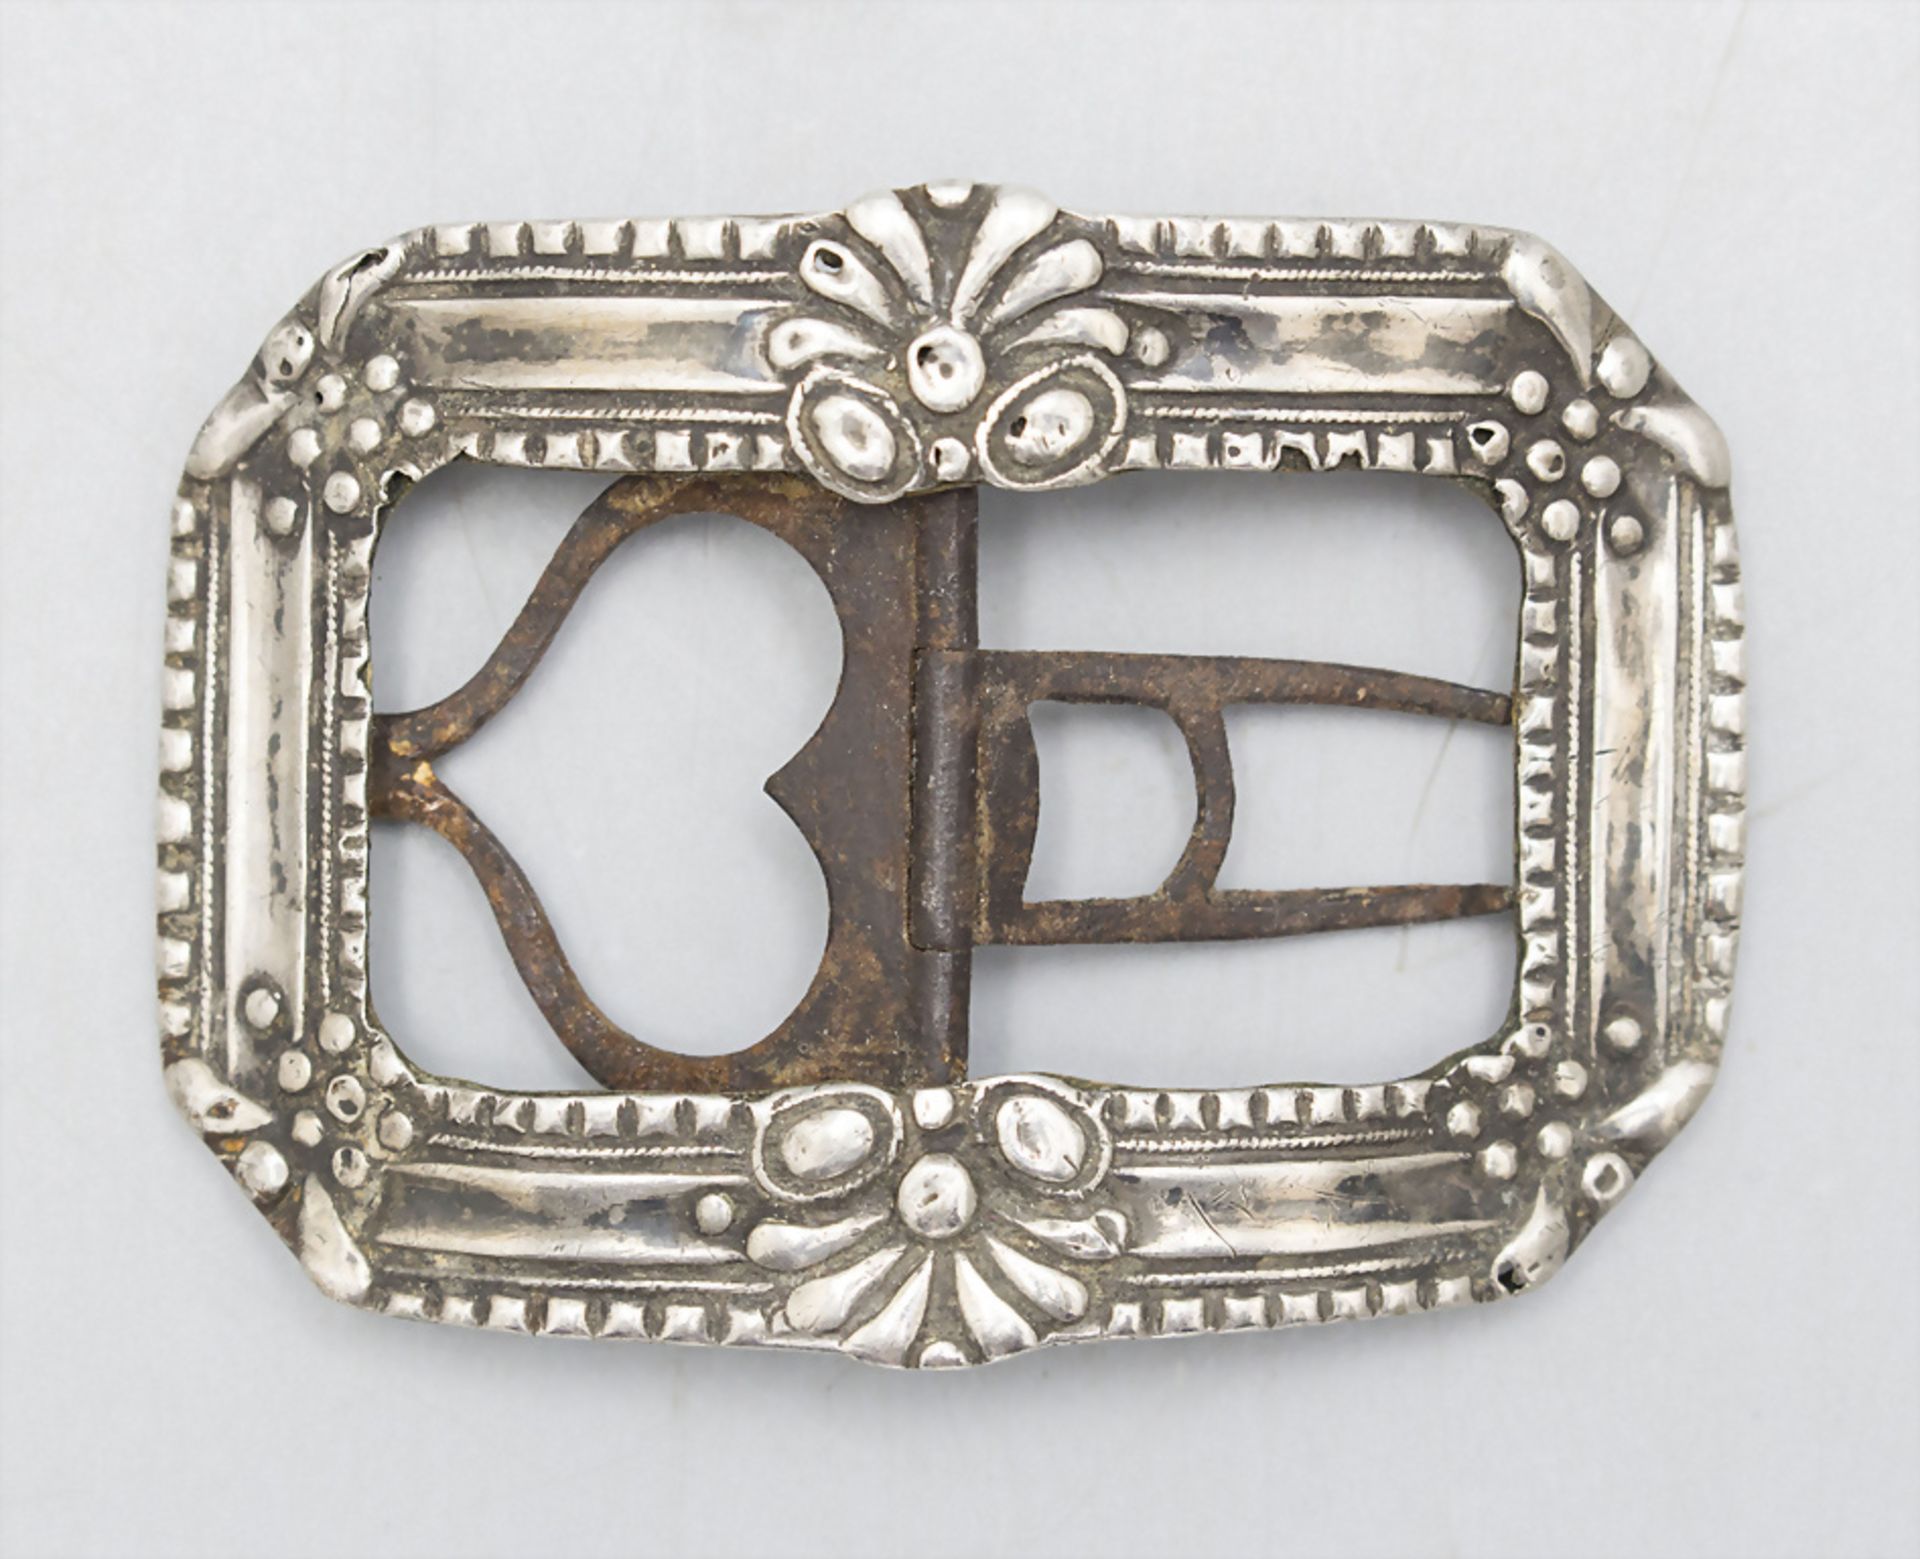 Silber Gürtelschließe / A silver belt buckle, Anfang 19. Jh.